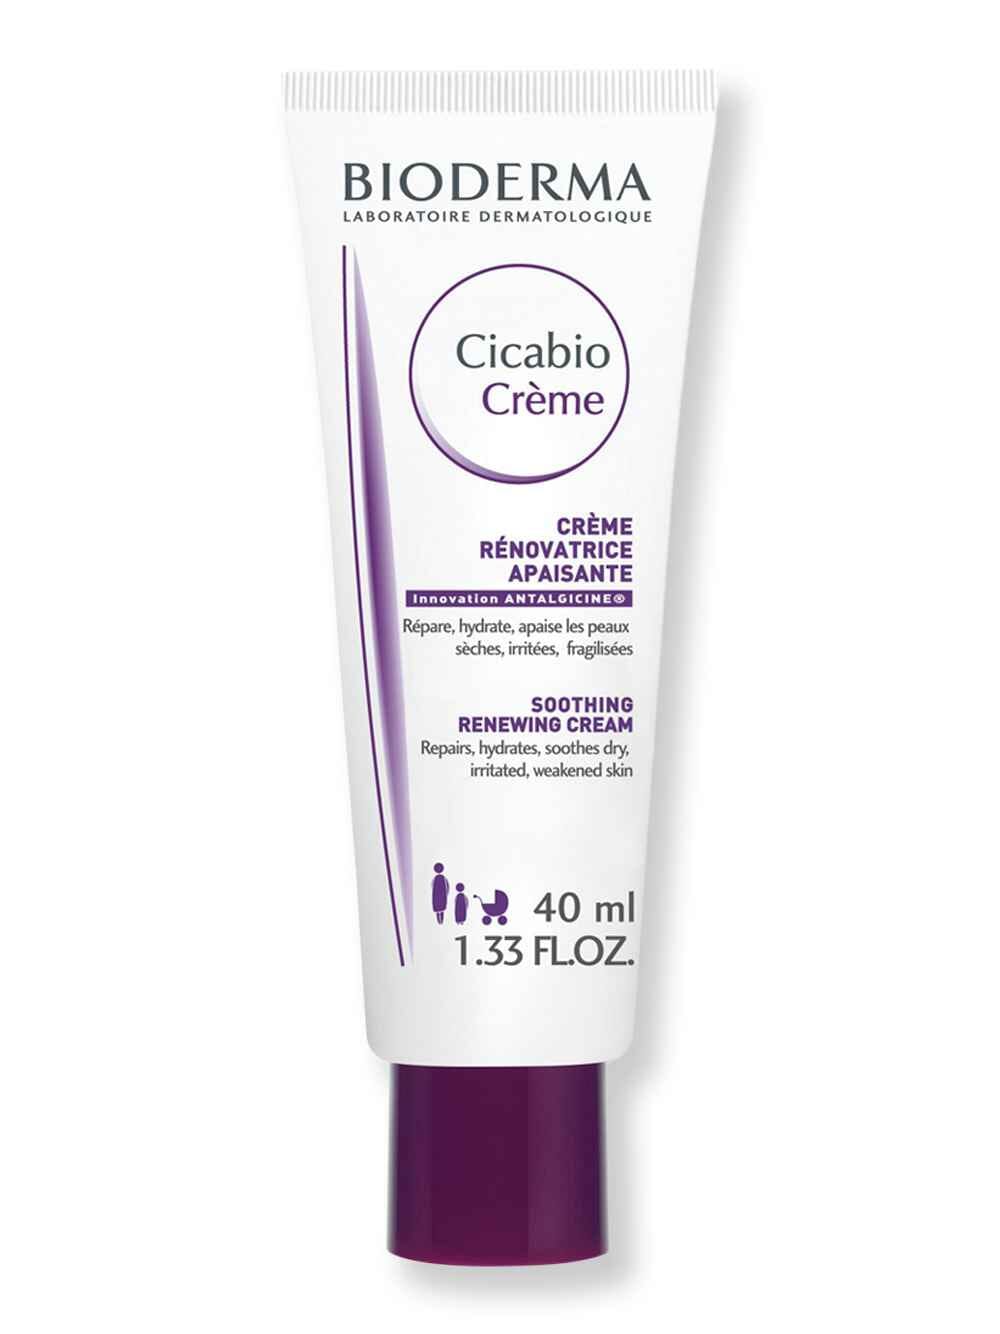 Bioderma Bioderma Cicabio Cream 1.35 fl oz40 ml Skin Care Treatments 